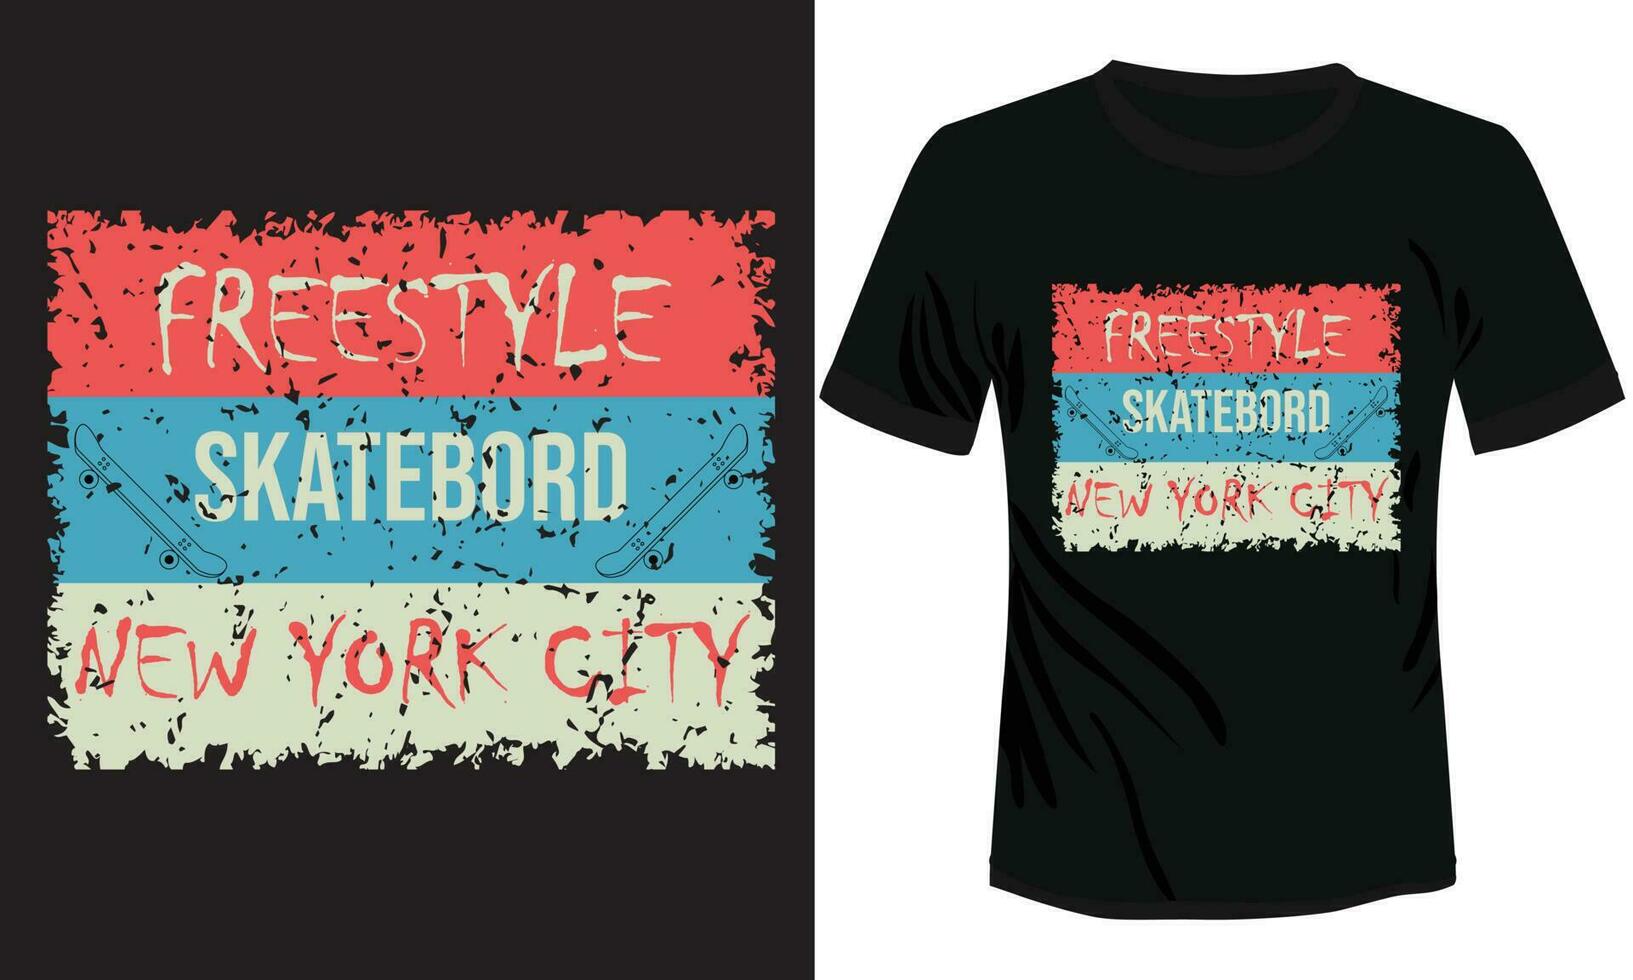 freestyle skateboard, sk8 t-shirt vector design, ready to print white skate t-shirt vector illustration New York City skateboard t-shirt design